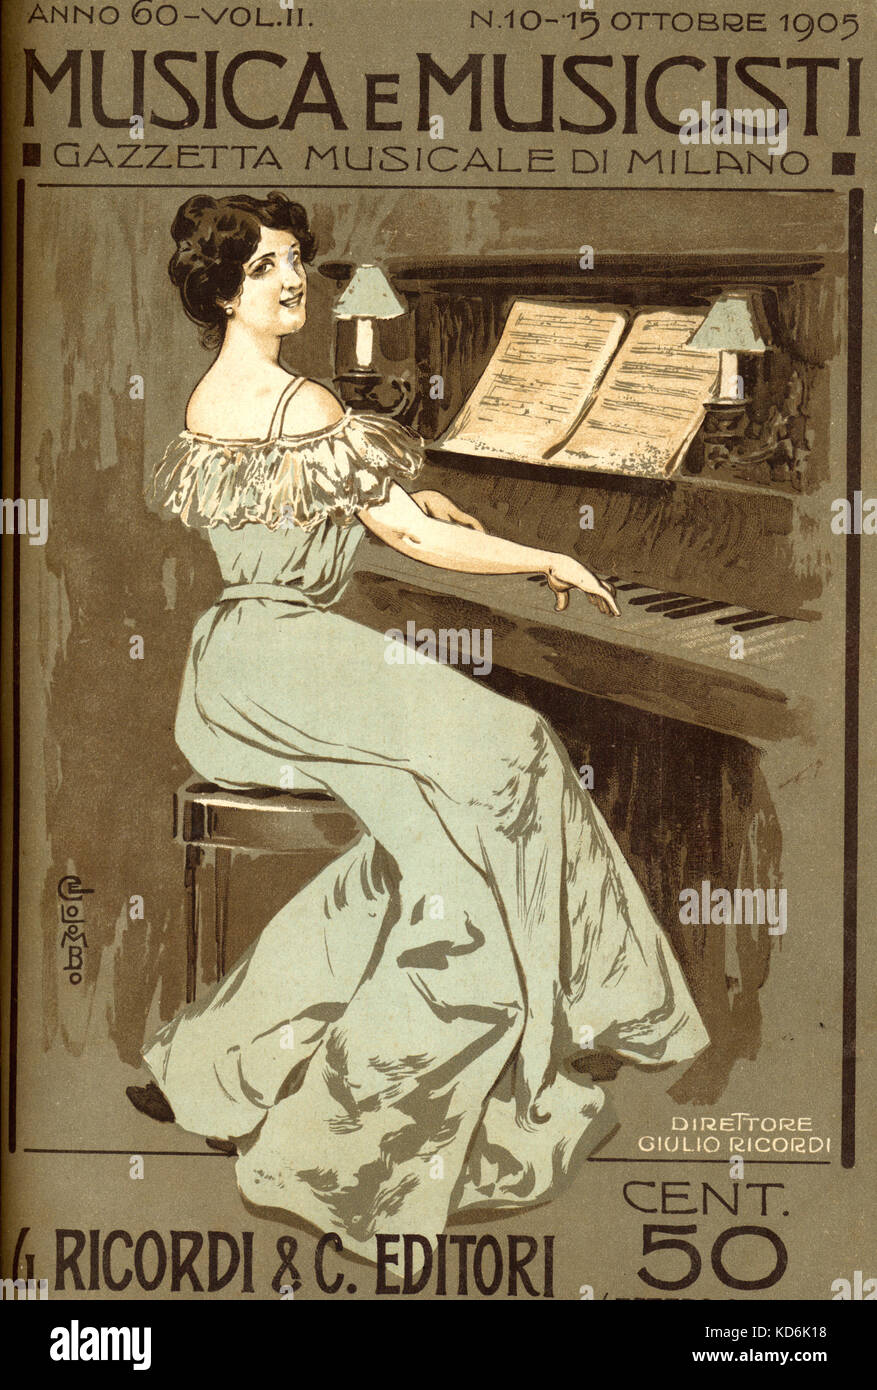 Frau am Klavier. Abbildung auf der Titelseite der italienischen Zeitschrift  'Musica e Musicisti", Nr. 81, Mailand, 1905 (der Editor wurde Giulio  Ricordi), durch E.Colombo. Klavier. Edwardian style Dress Stockfotografie -  Alamy